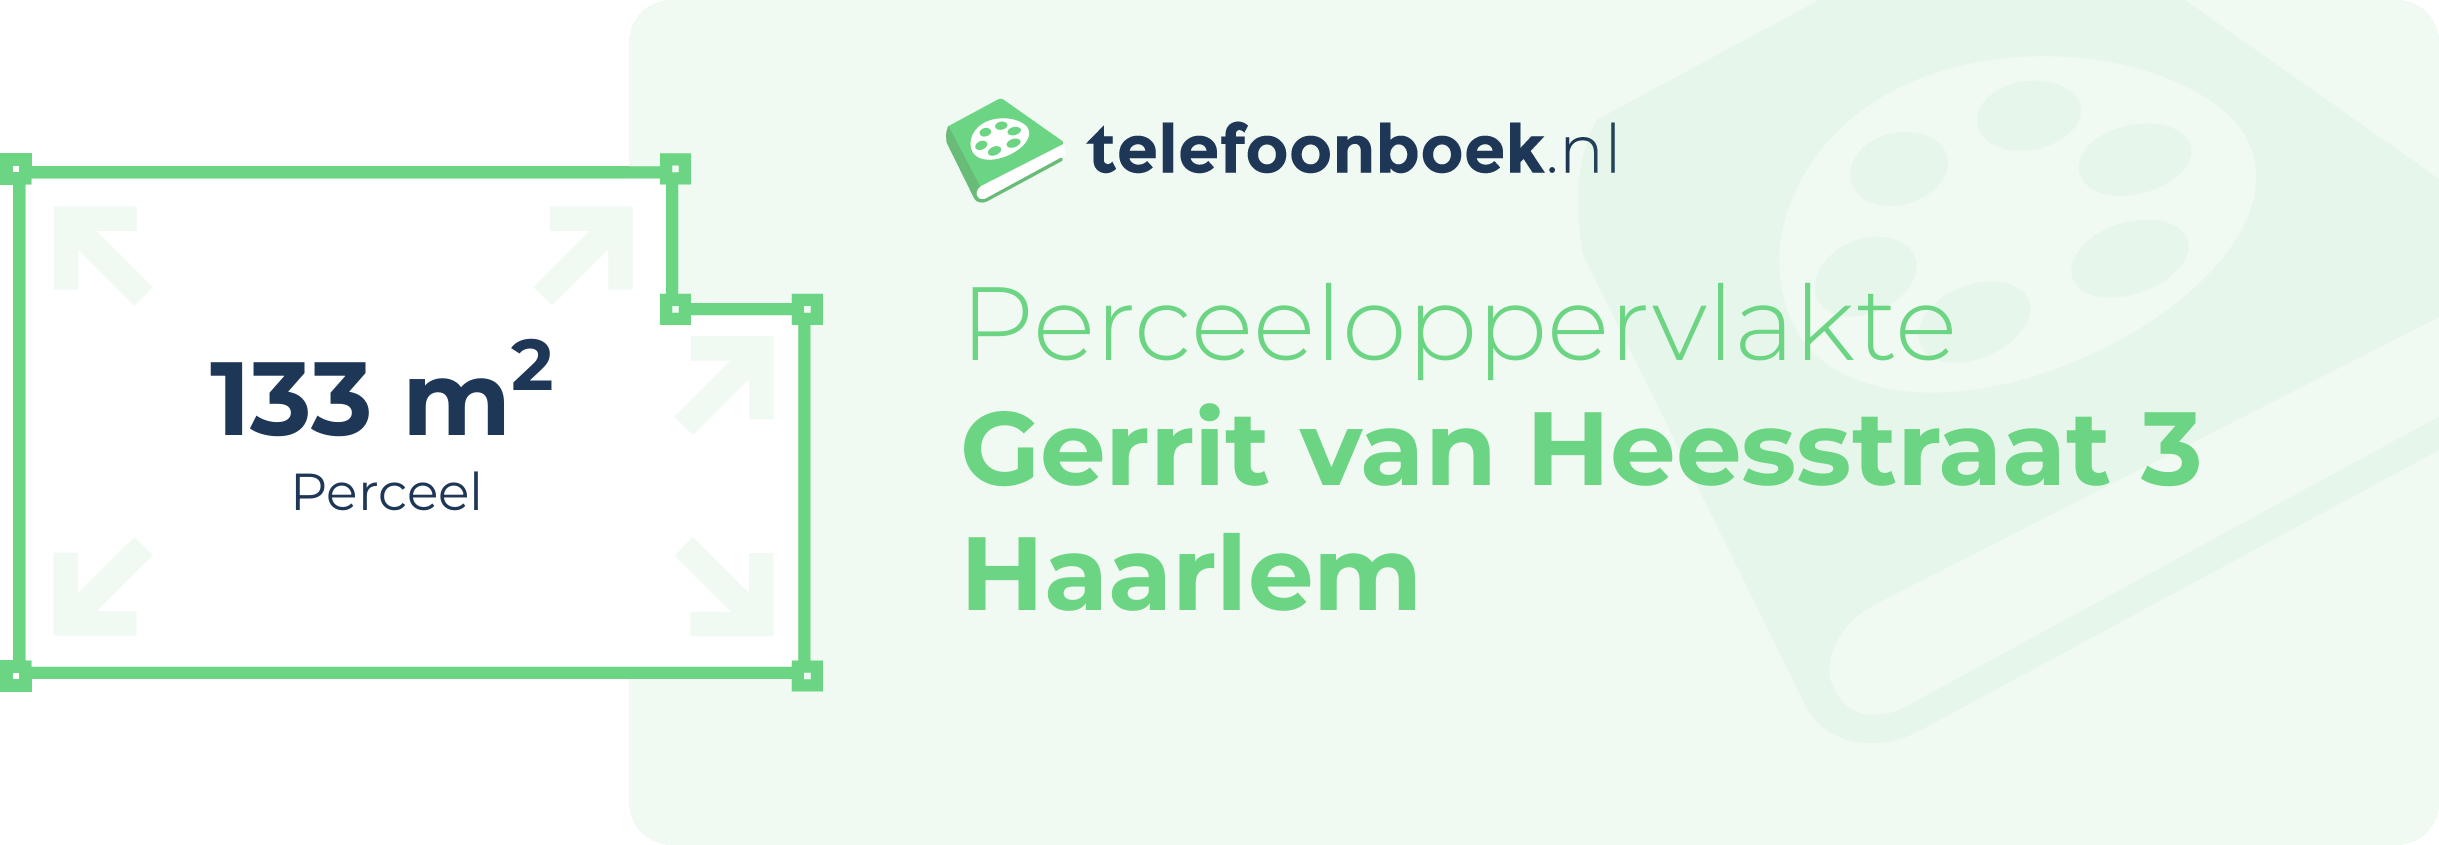 Perceeloppervlakte Gerrit Van Heesstraat 3 Haarlem